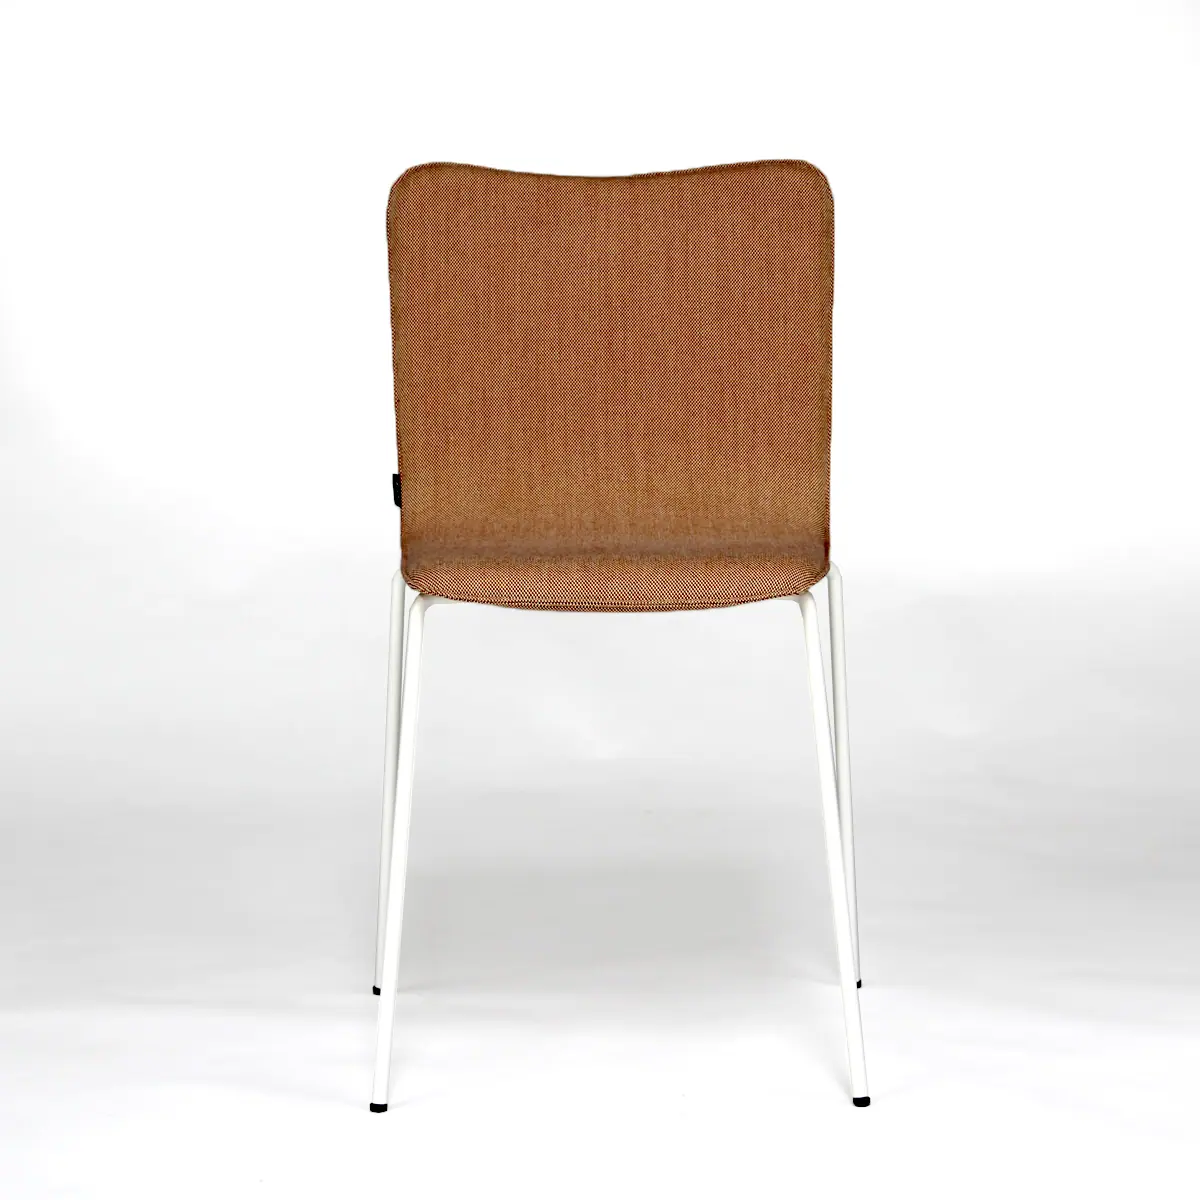 22789-22781-miro-chair-armchair